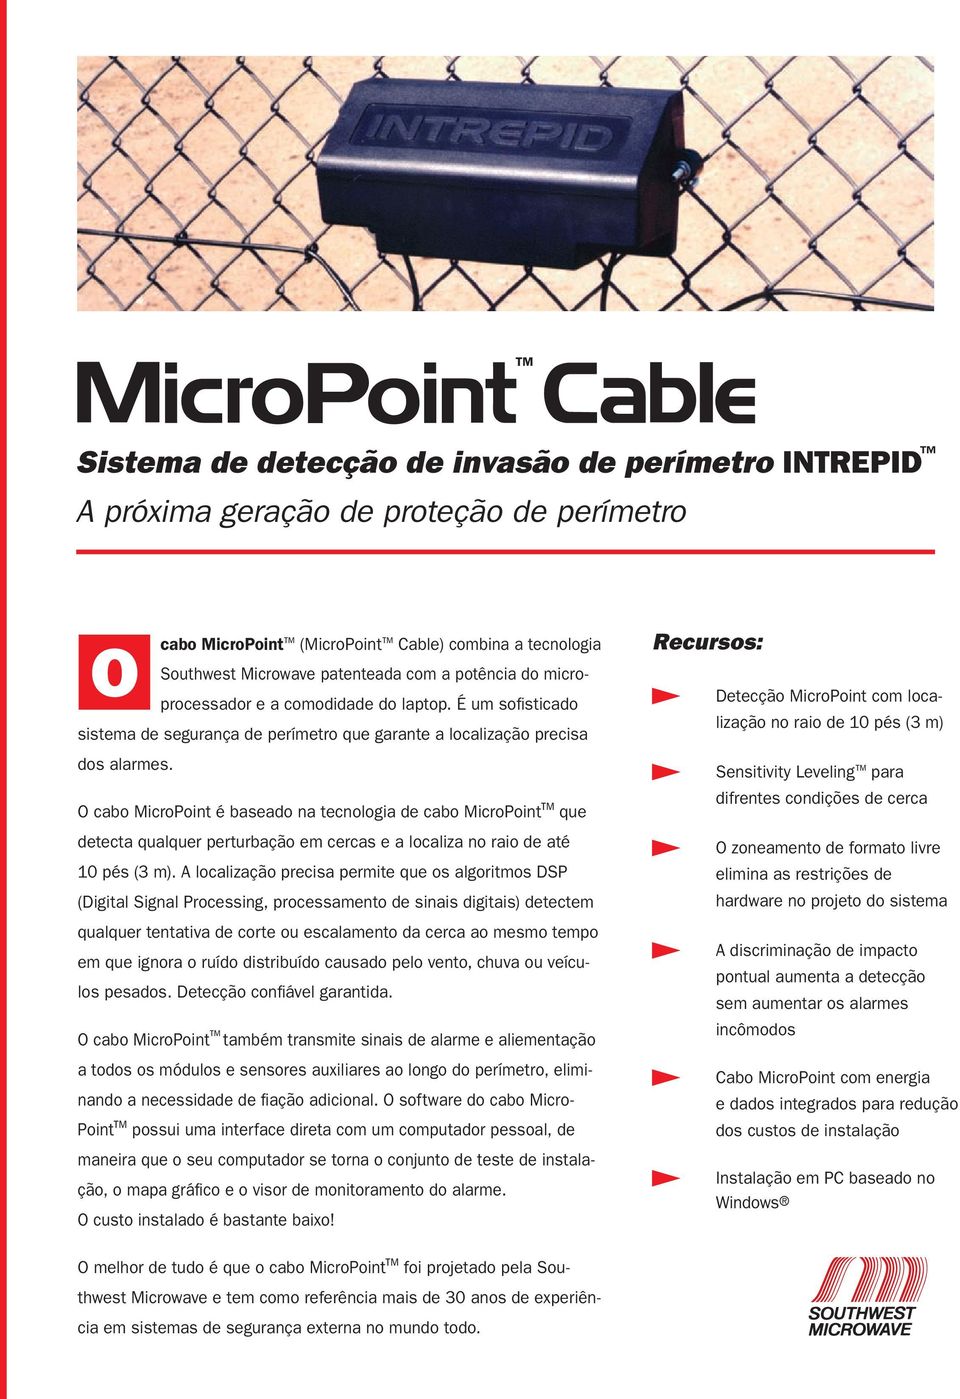 O cabo MicroPoint é baseado na tecnologia de cabo MicroPoint que detecta qualquer perturbação em cercas e a localiza no raio de até 10 pés (3 m).